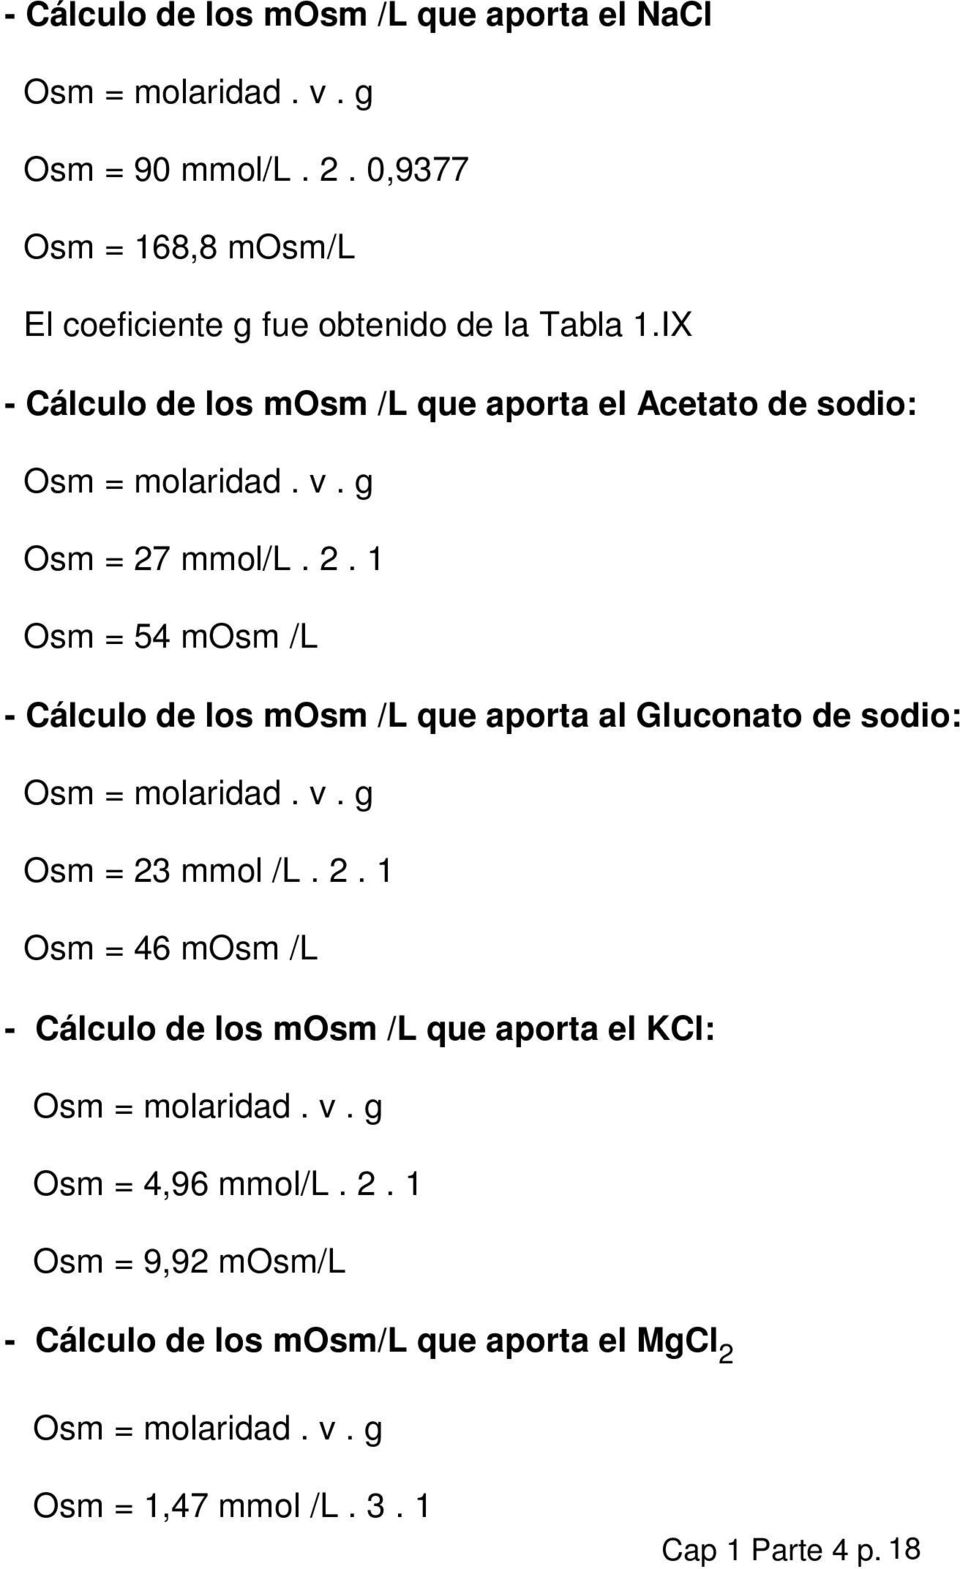 g Osm = 27 mmol/l. 2. 1 Osm = 54 mosm /L - Cálculo de los mosm /L que aporta al Gluconato de sodio: Osm = molaridad. v. g Osm = 23 mmol /L. 2. 1 Osm = 46 mosm /L - Cálculo de los mosm /L que aporta el KCl: Osm = molaridad.